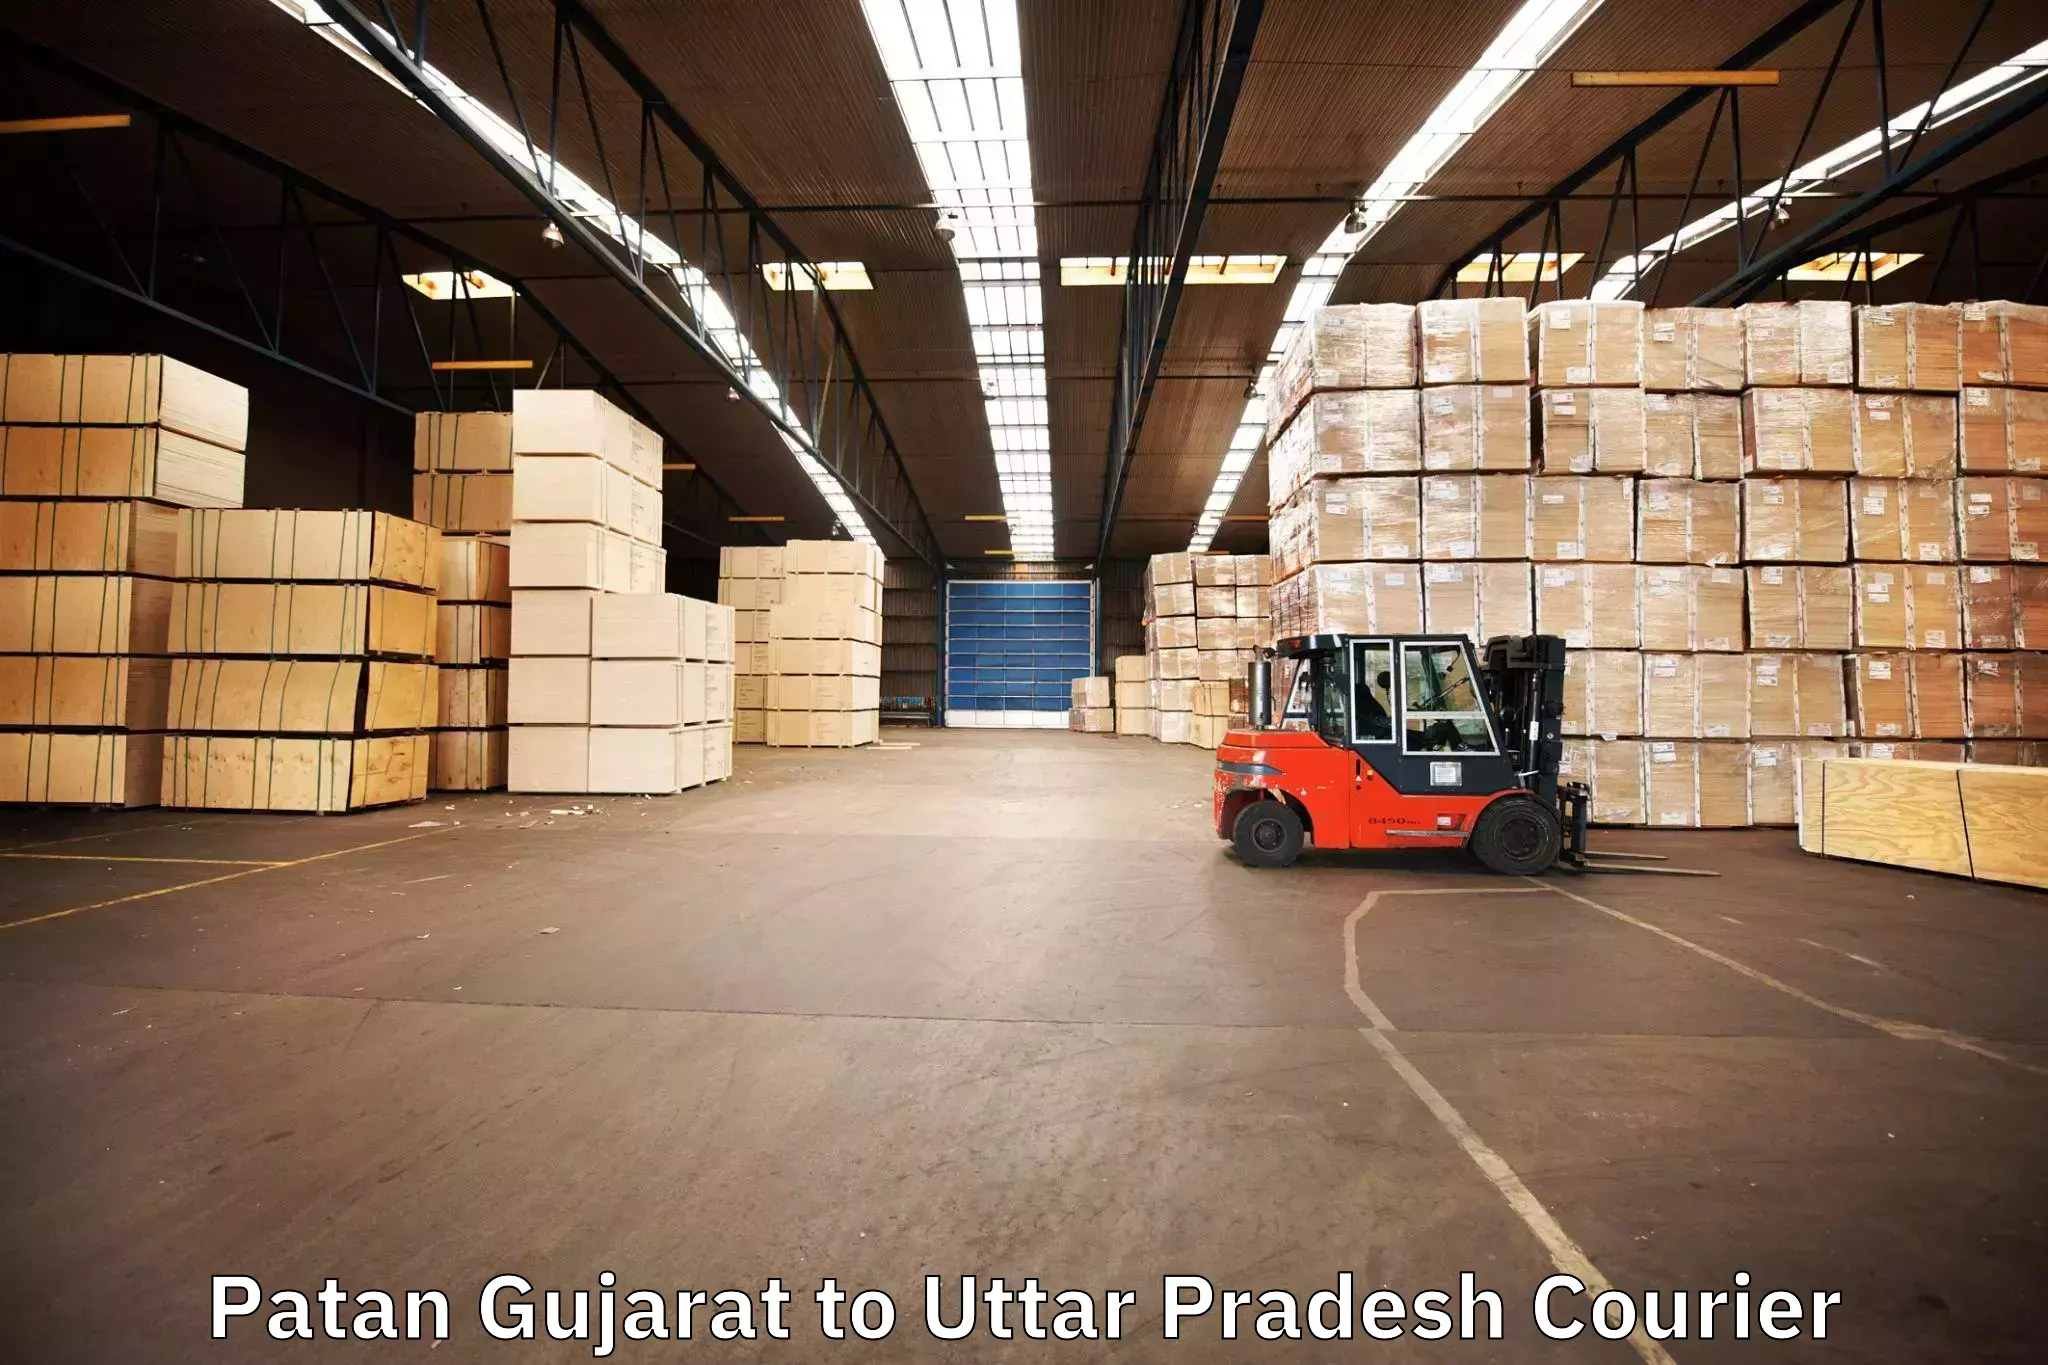 Specialized moving company Patan Gujarat to Khadda